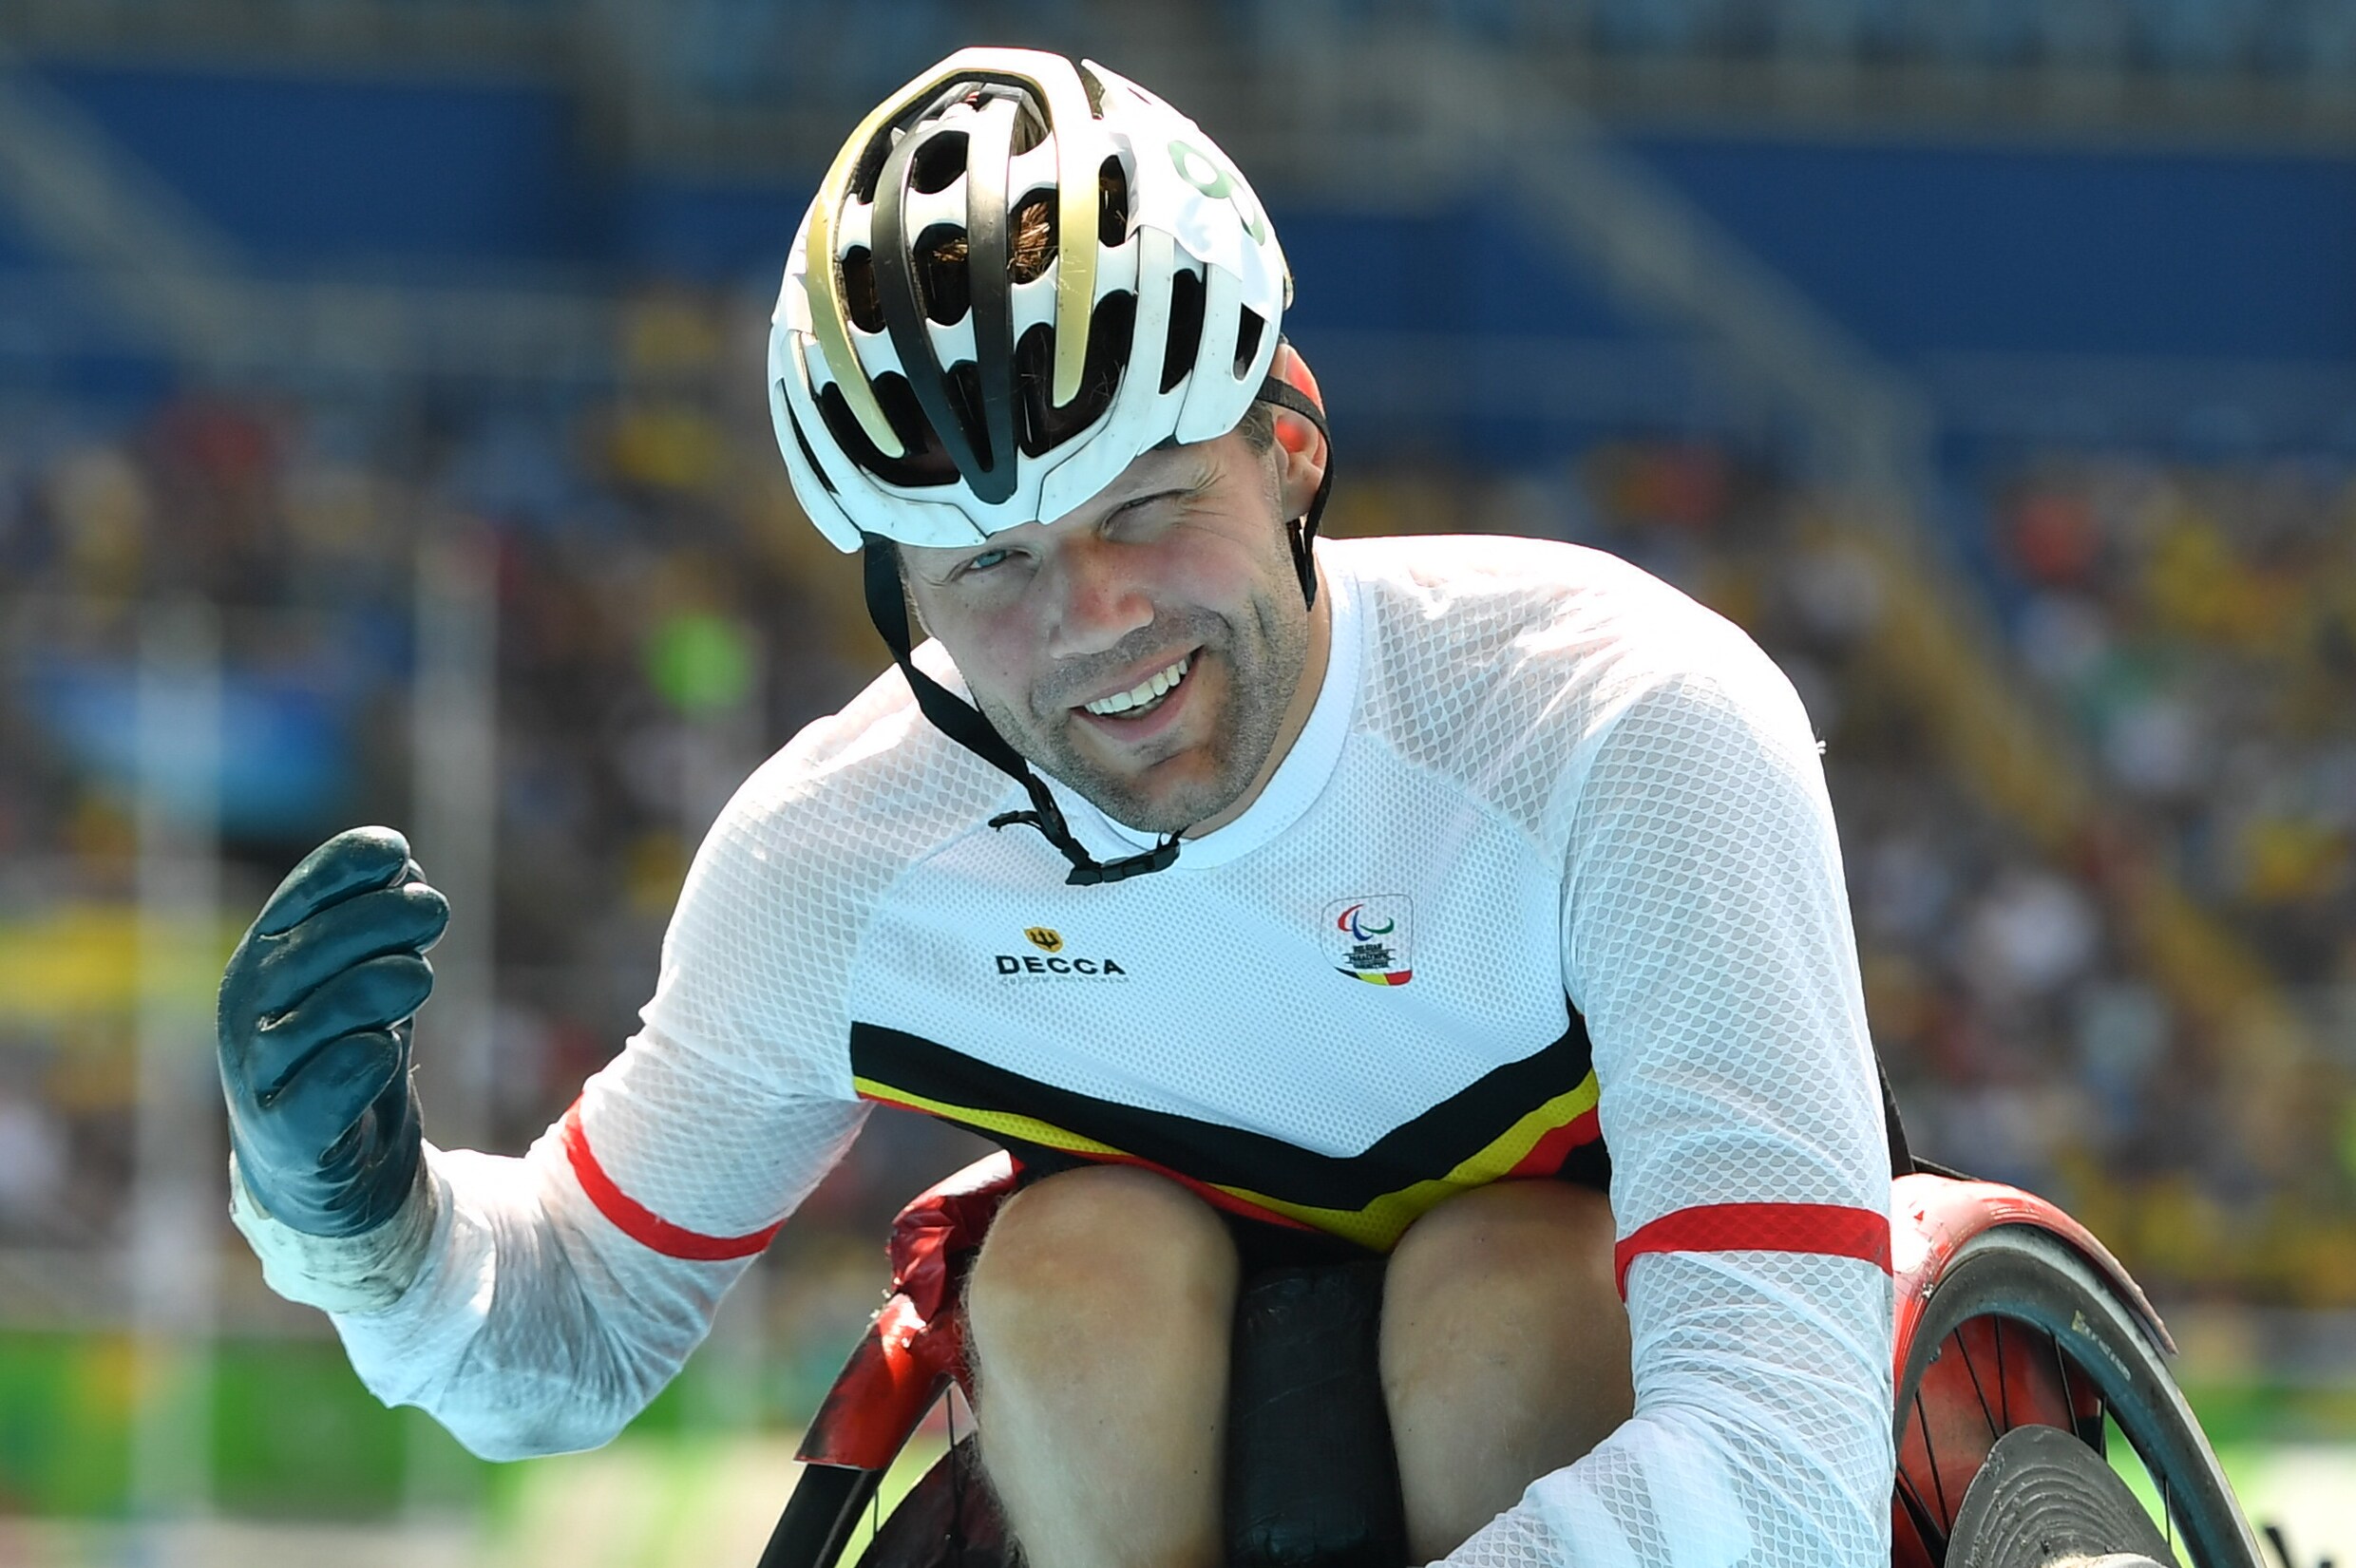 Zilver, goud, zilver en nu dankzij nieuwe beelden weer goud voor Peter Genyn op WK para-atletiek